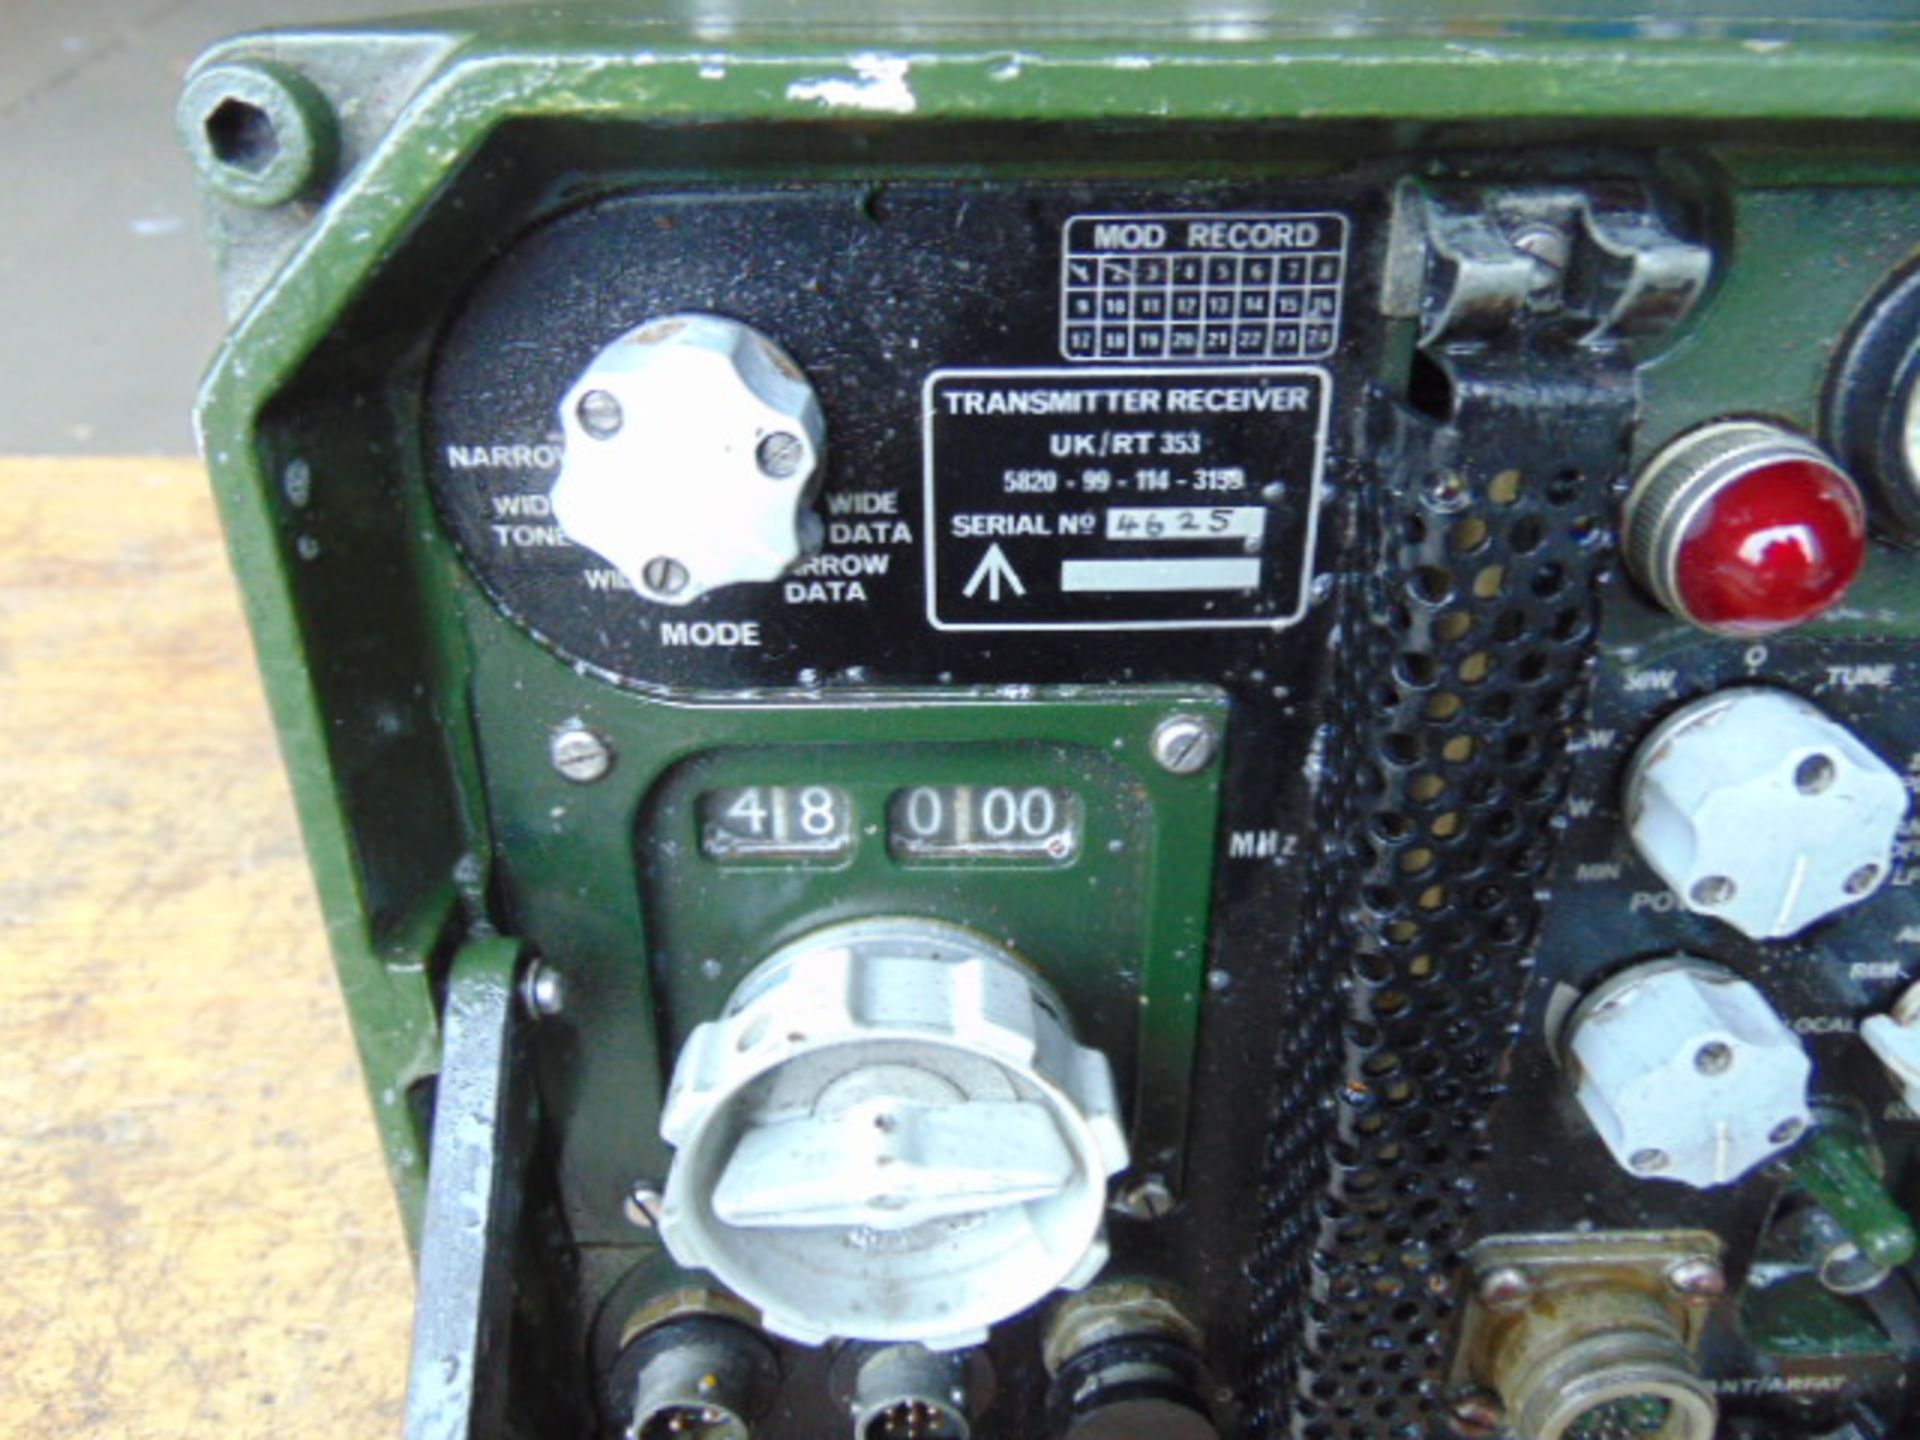 Clansman Transmitter Receiver UK/RT 353 - Bild 3 aus 6